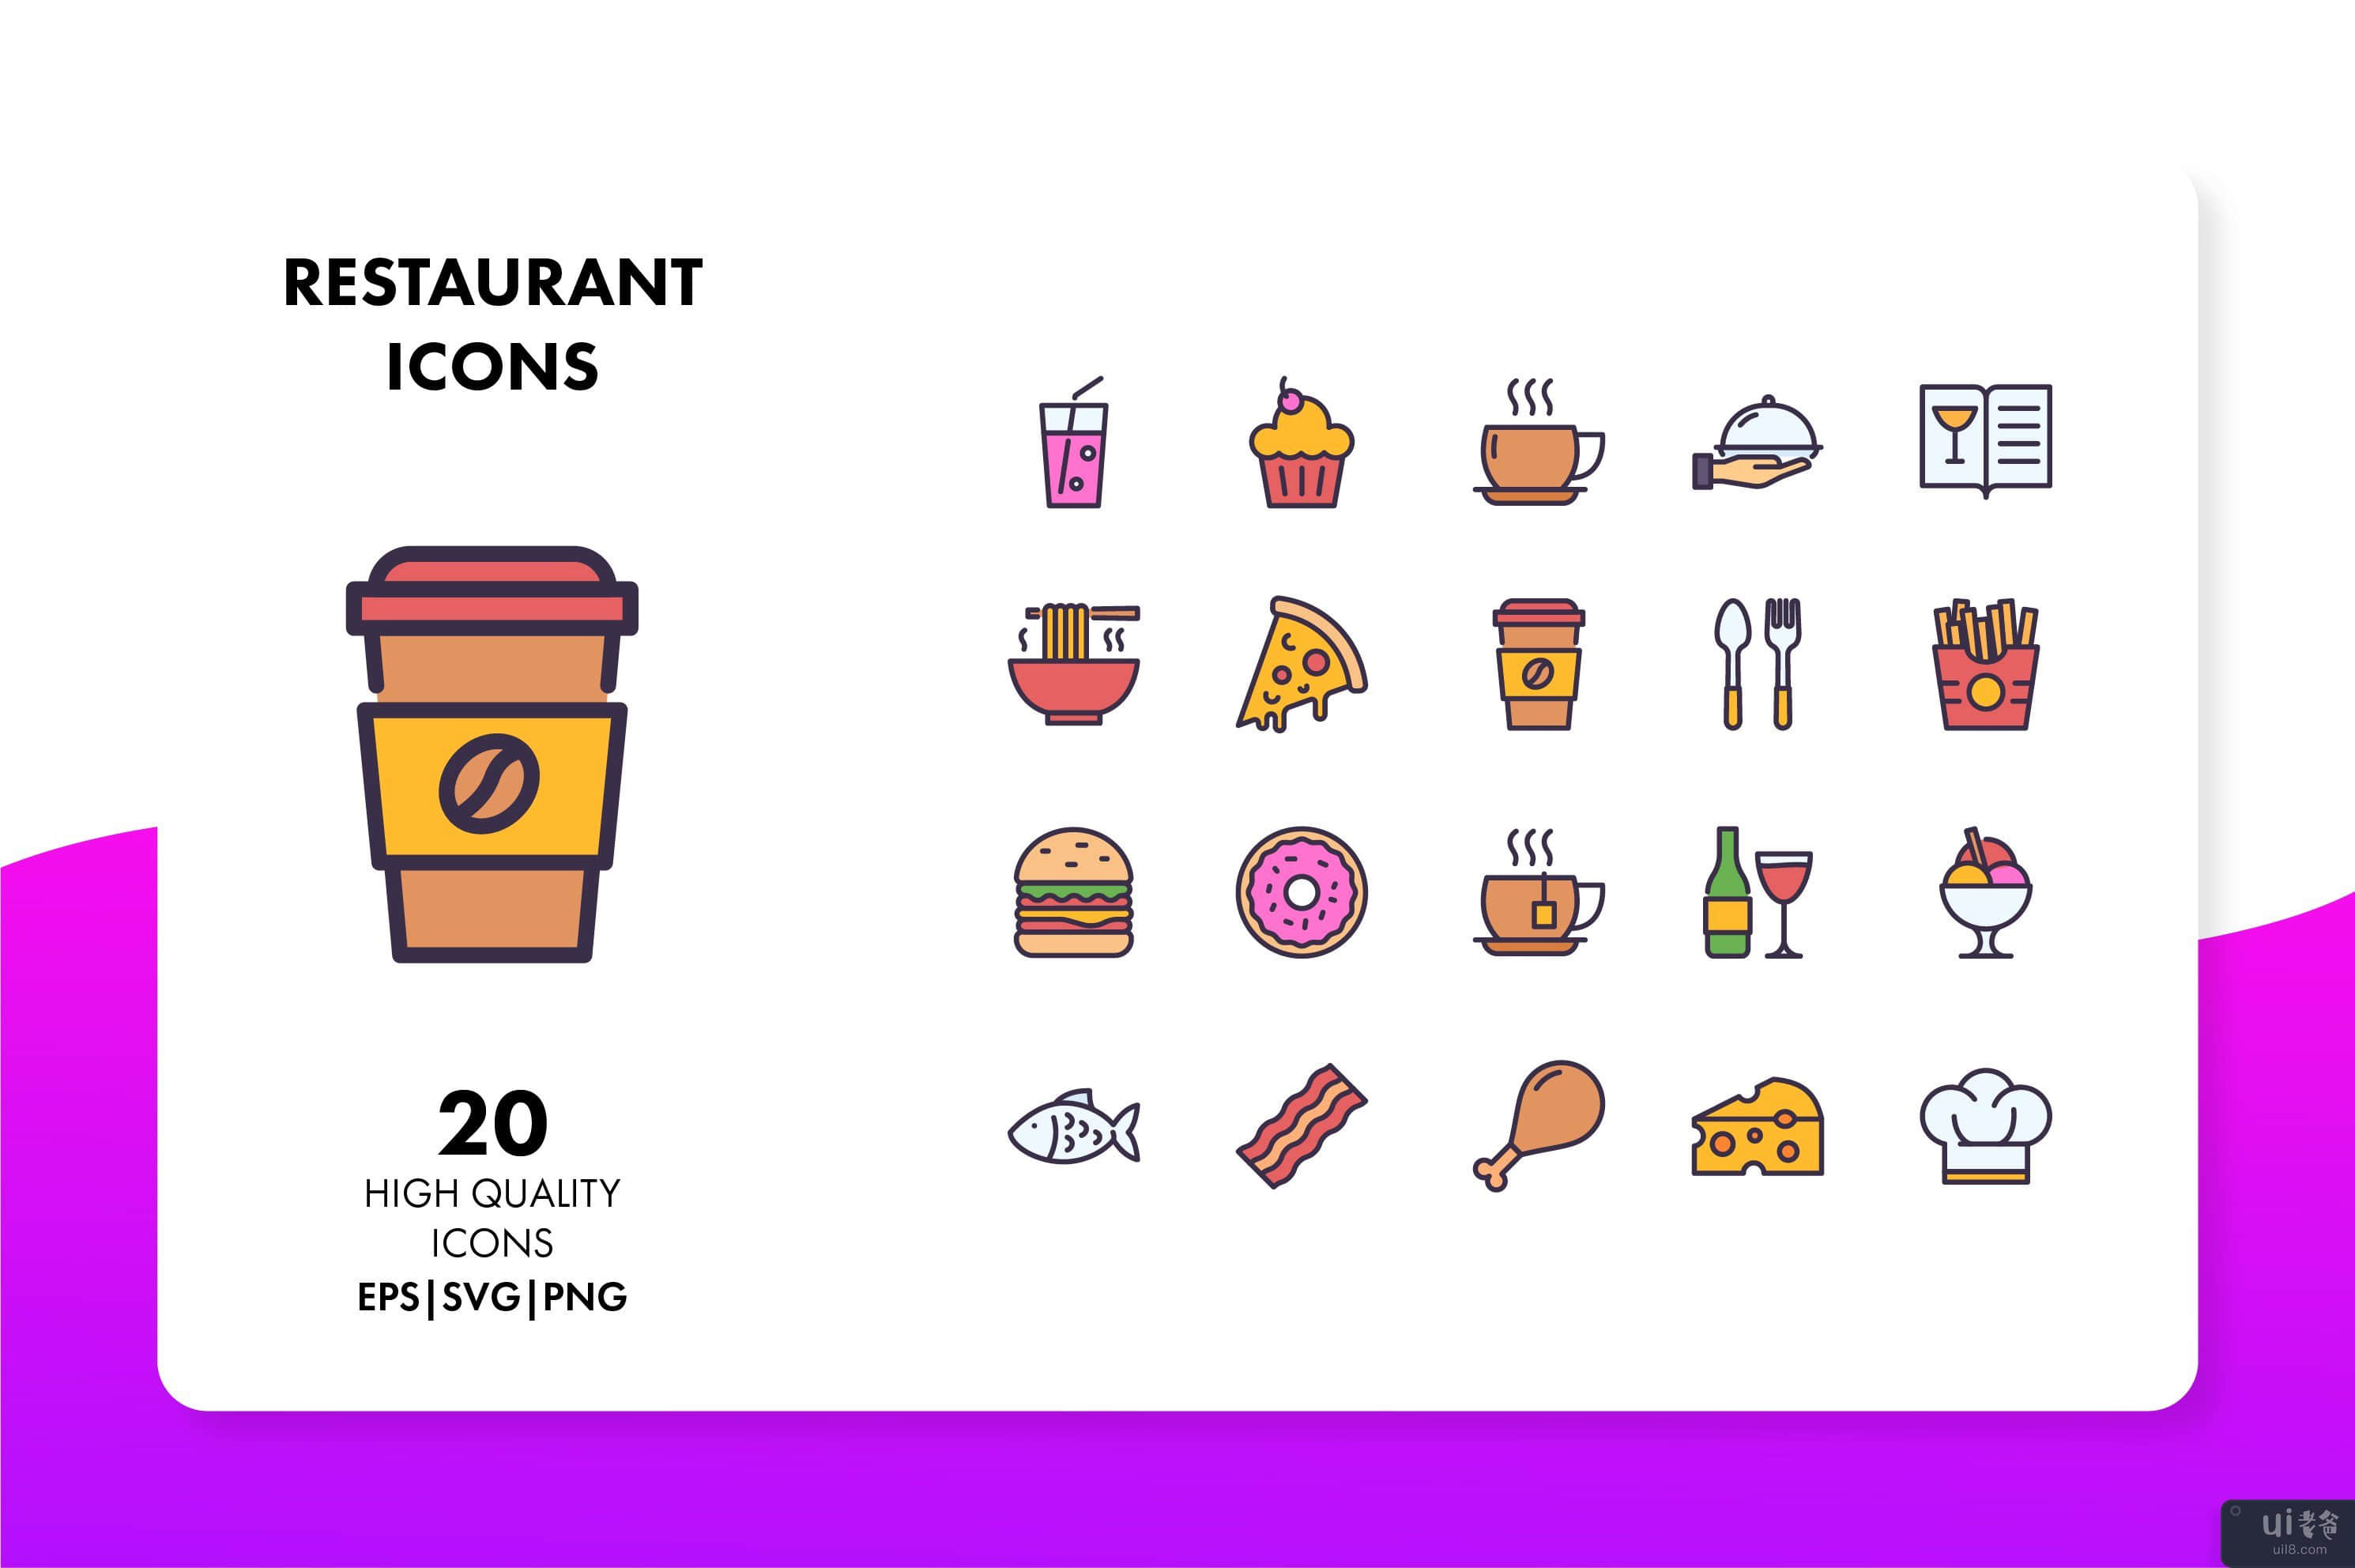 餐厅图标(Restaurant Icons)插图1